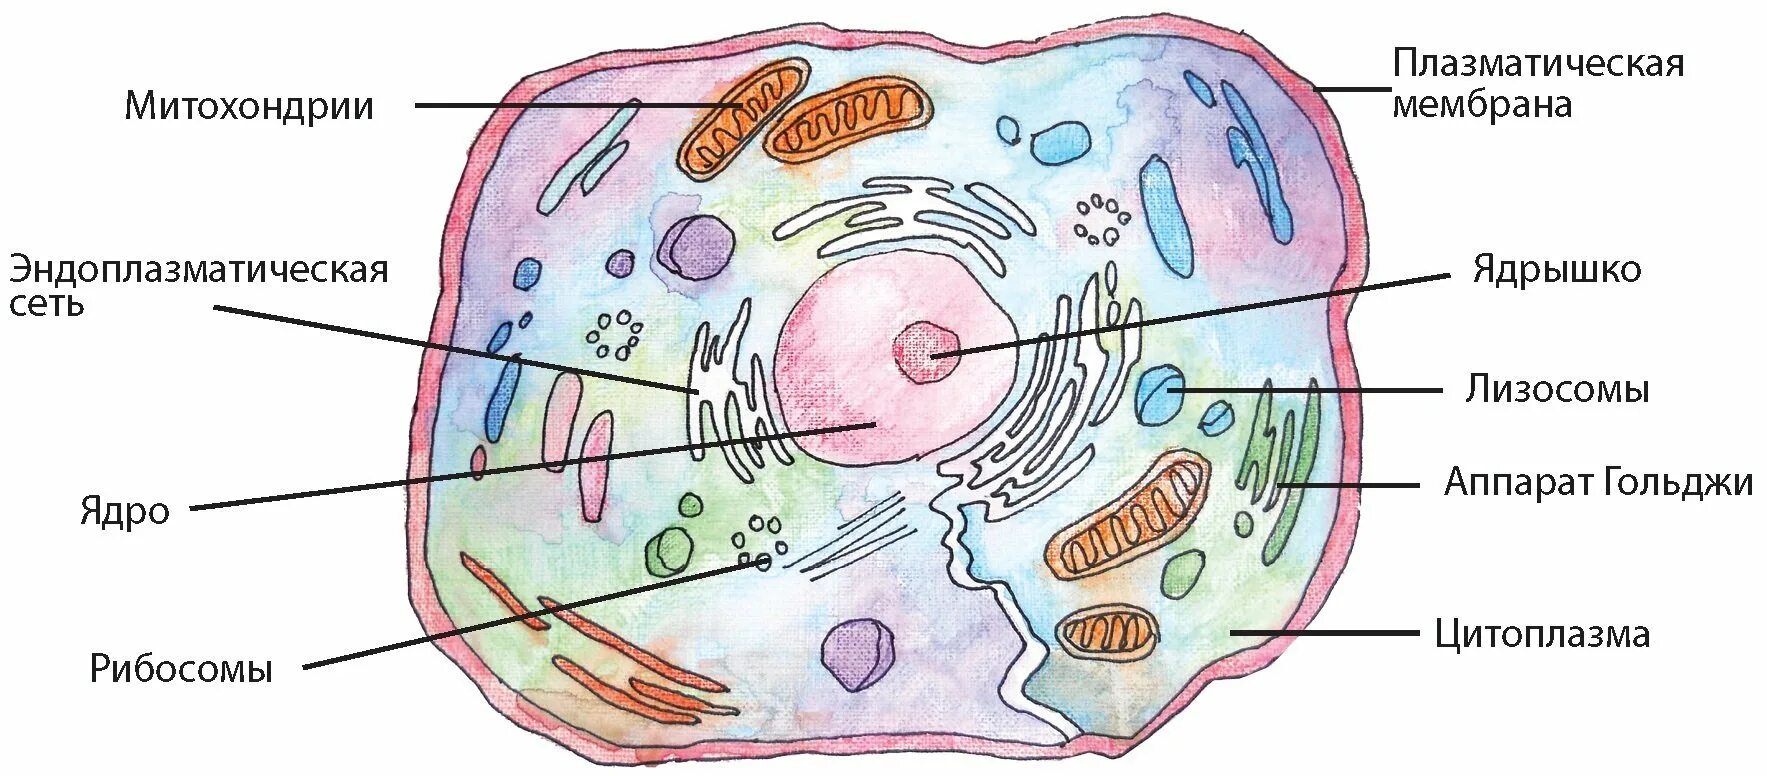 Строение клетки мембрана цитоплазма органоиды ядро. Клеточный центр цитоплазма митохондрии. Схема строения эукариотической клетки. Схематическое строение эукариотической клетки.